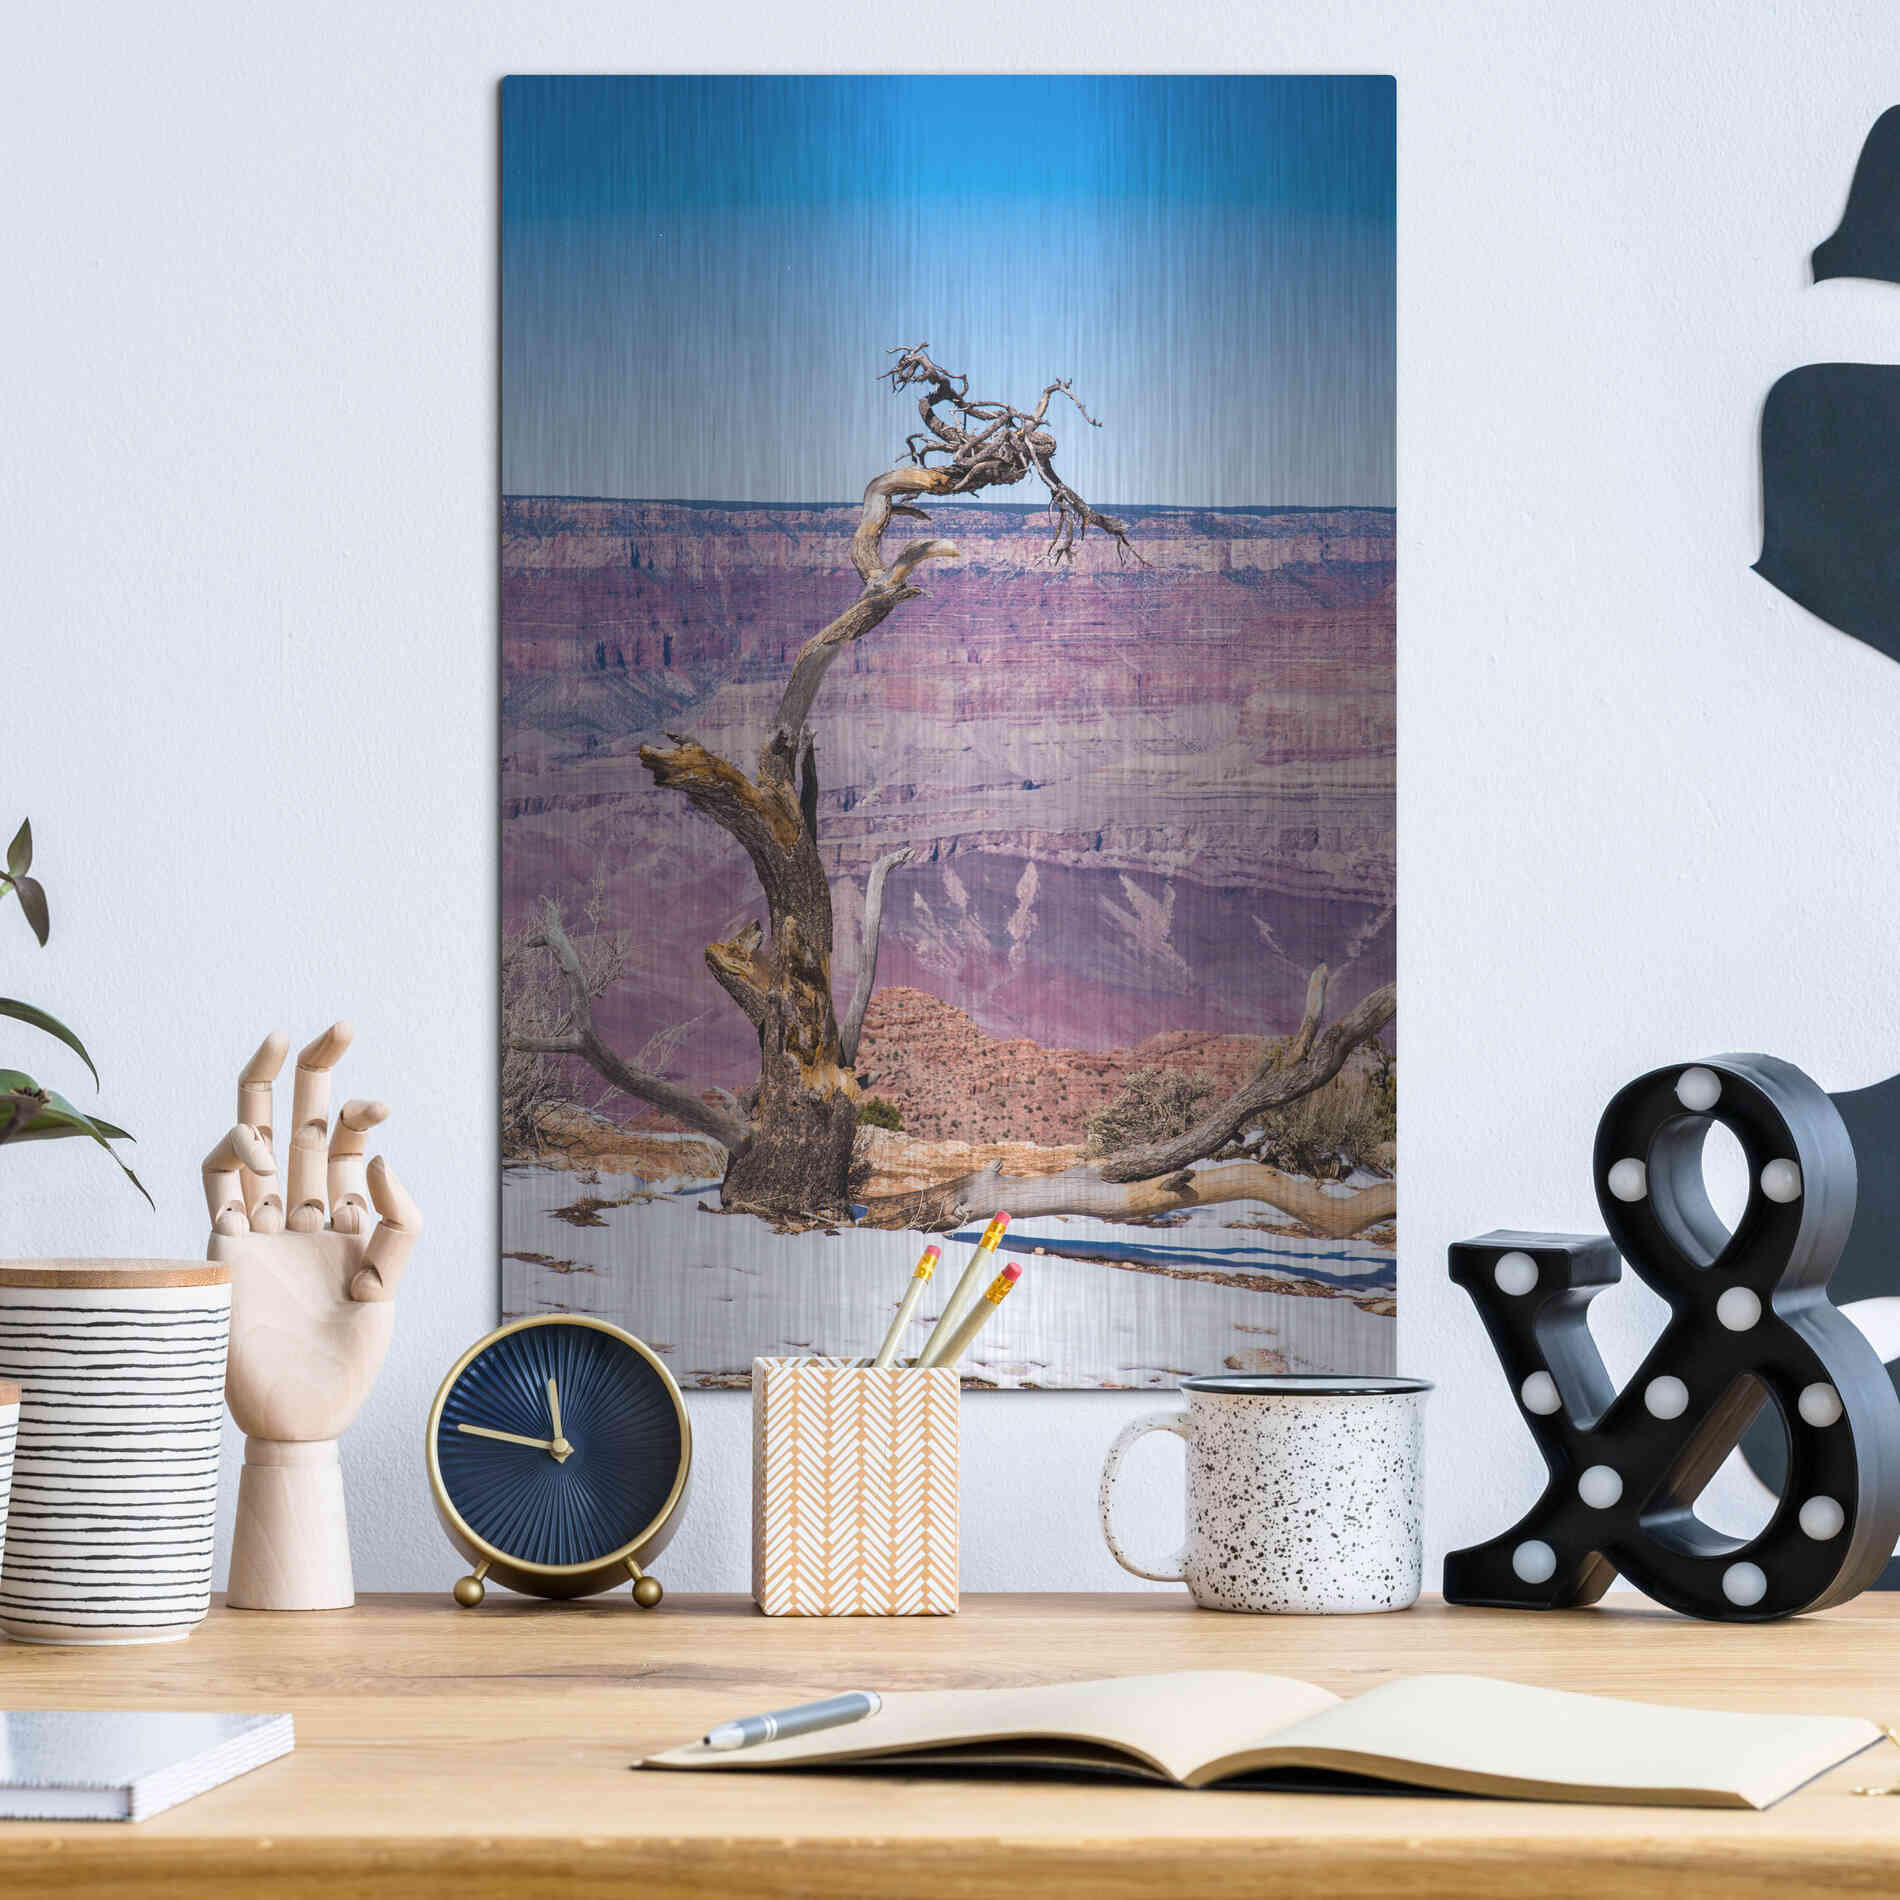 Luxe Metal Art ' Dead Tree In Grand Canyon II' by Robin Vandenabeele, Metal Wall Art,12x16